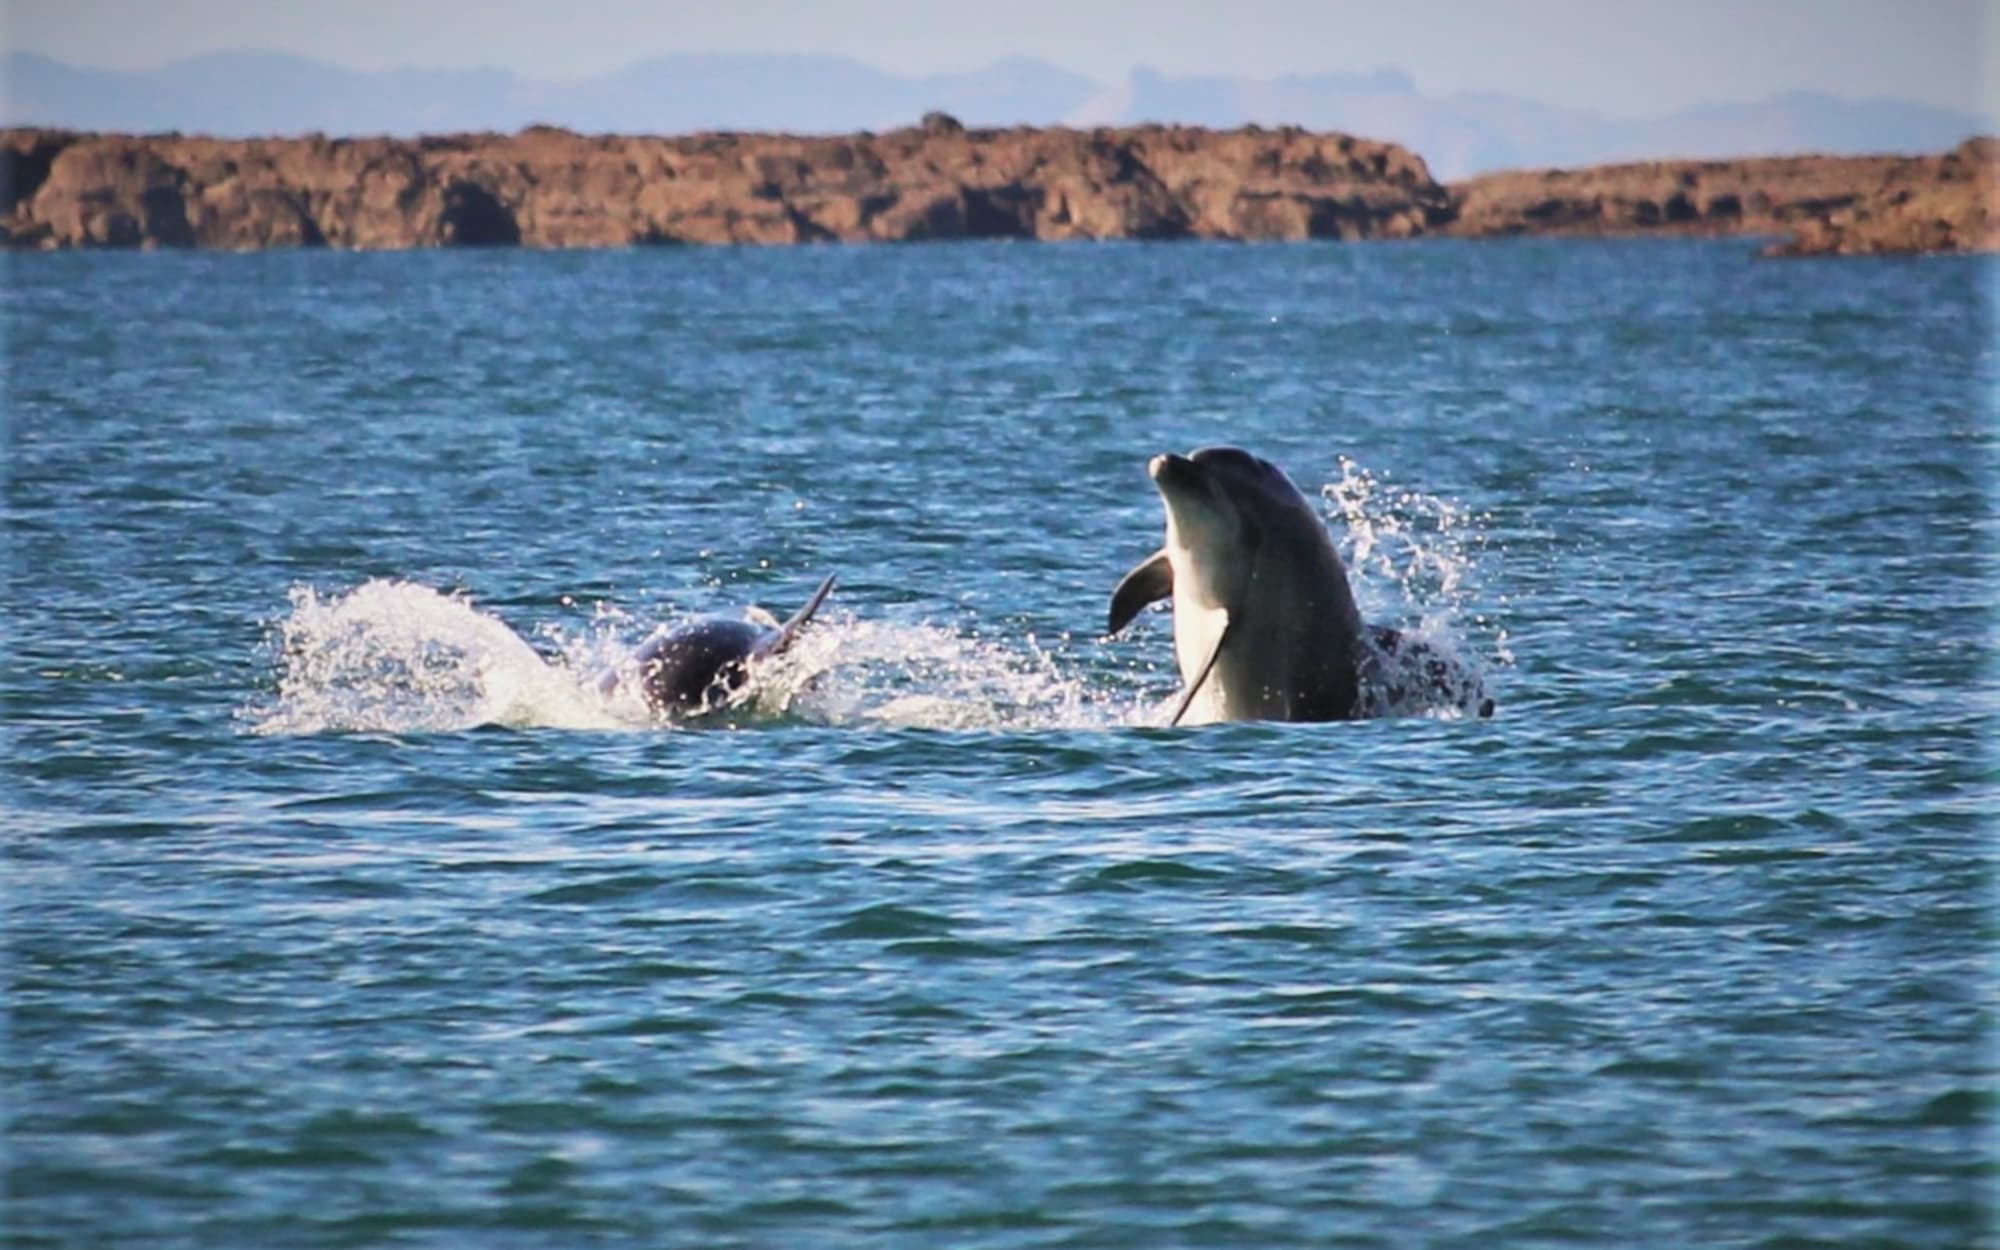 Dolphins frolic at Oneroa, Waiheke Island.